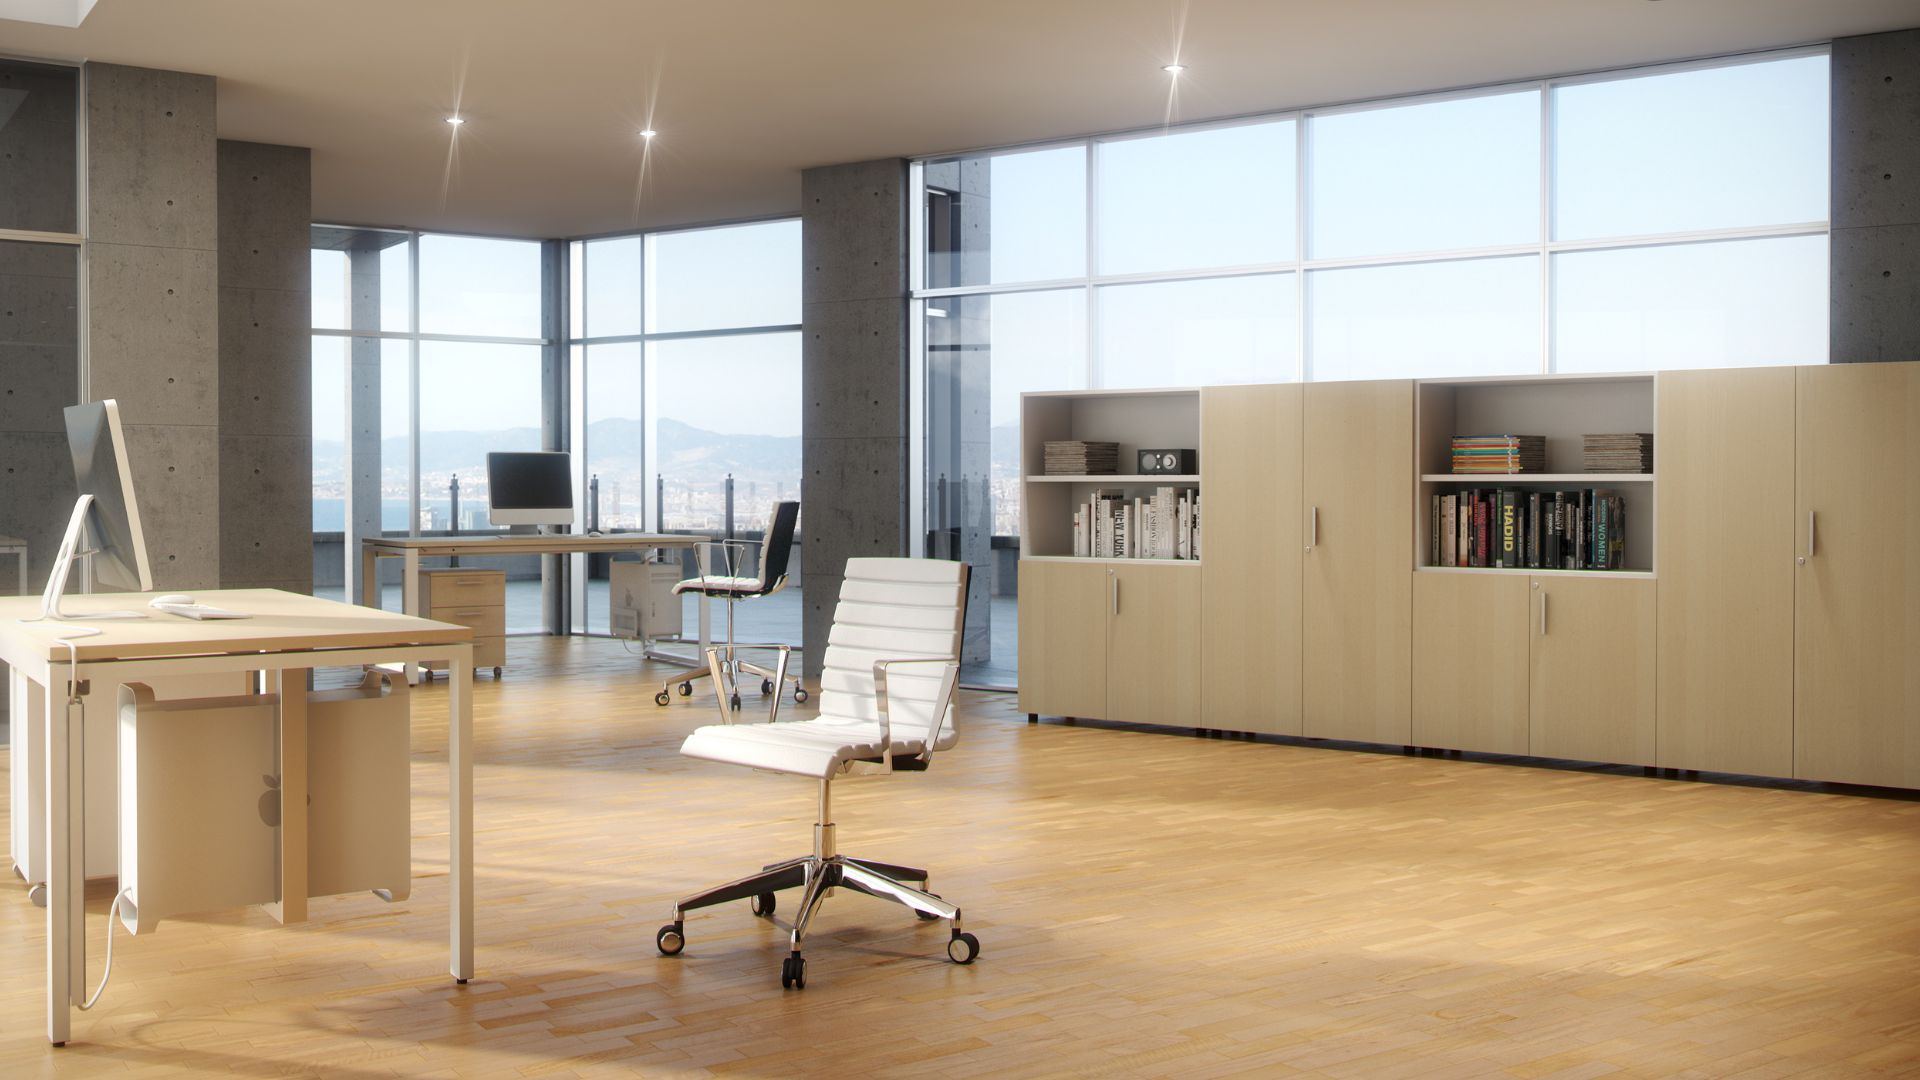 Mesa I.pop Anbo Suministros, especialistas en venta de mobiliario de oficina en Barcelona